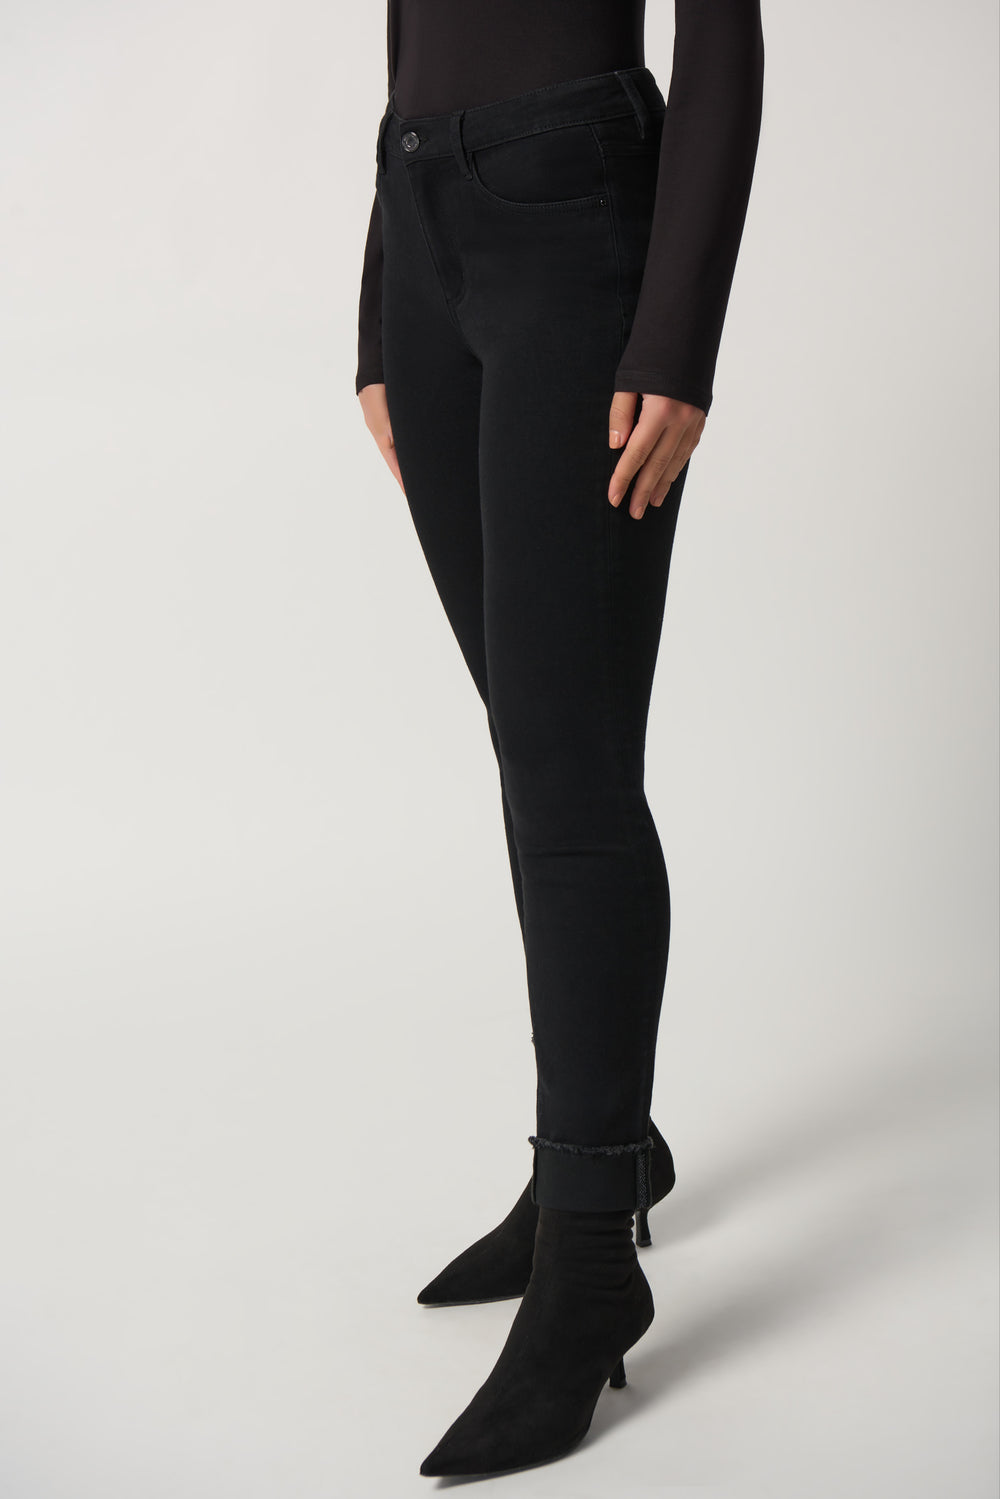 Joseph Ribkoff Fall 2023 women's slim fit black denim jeans - front